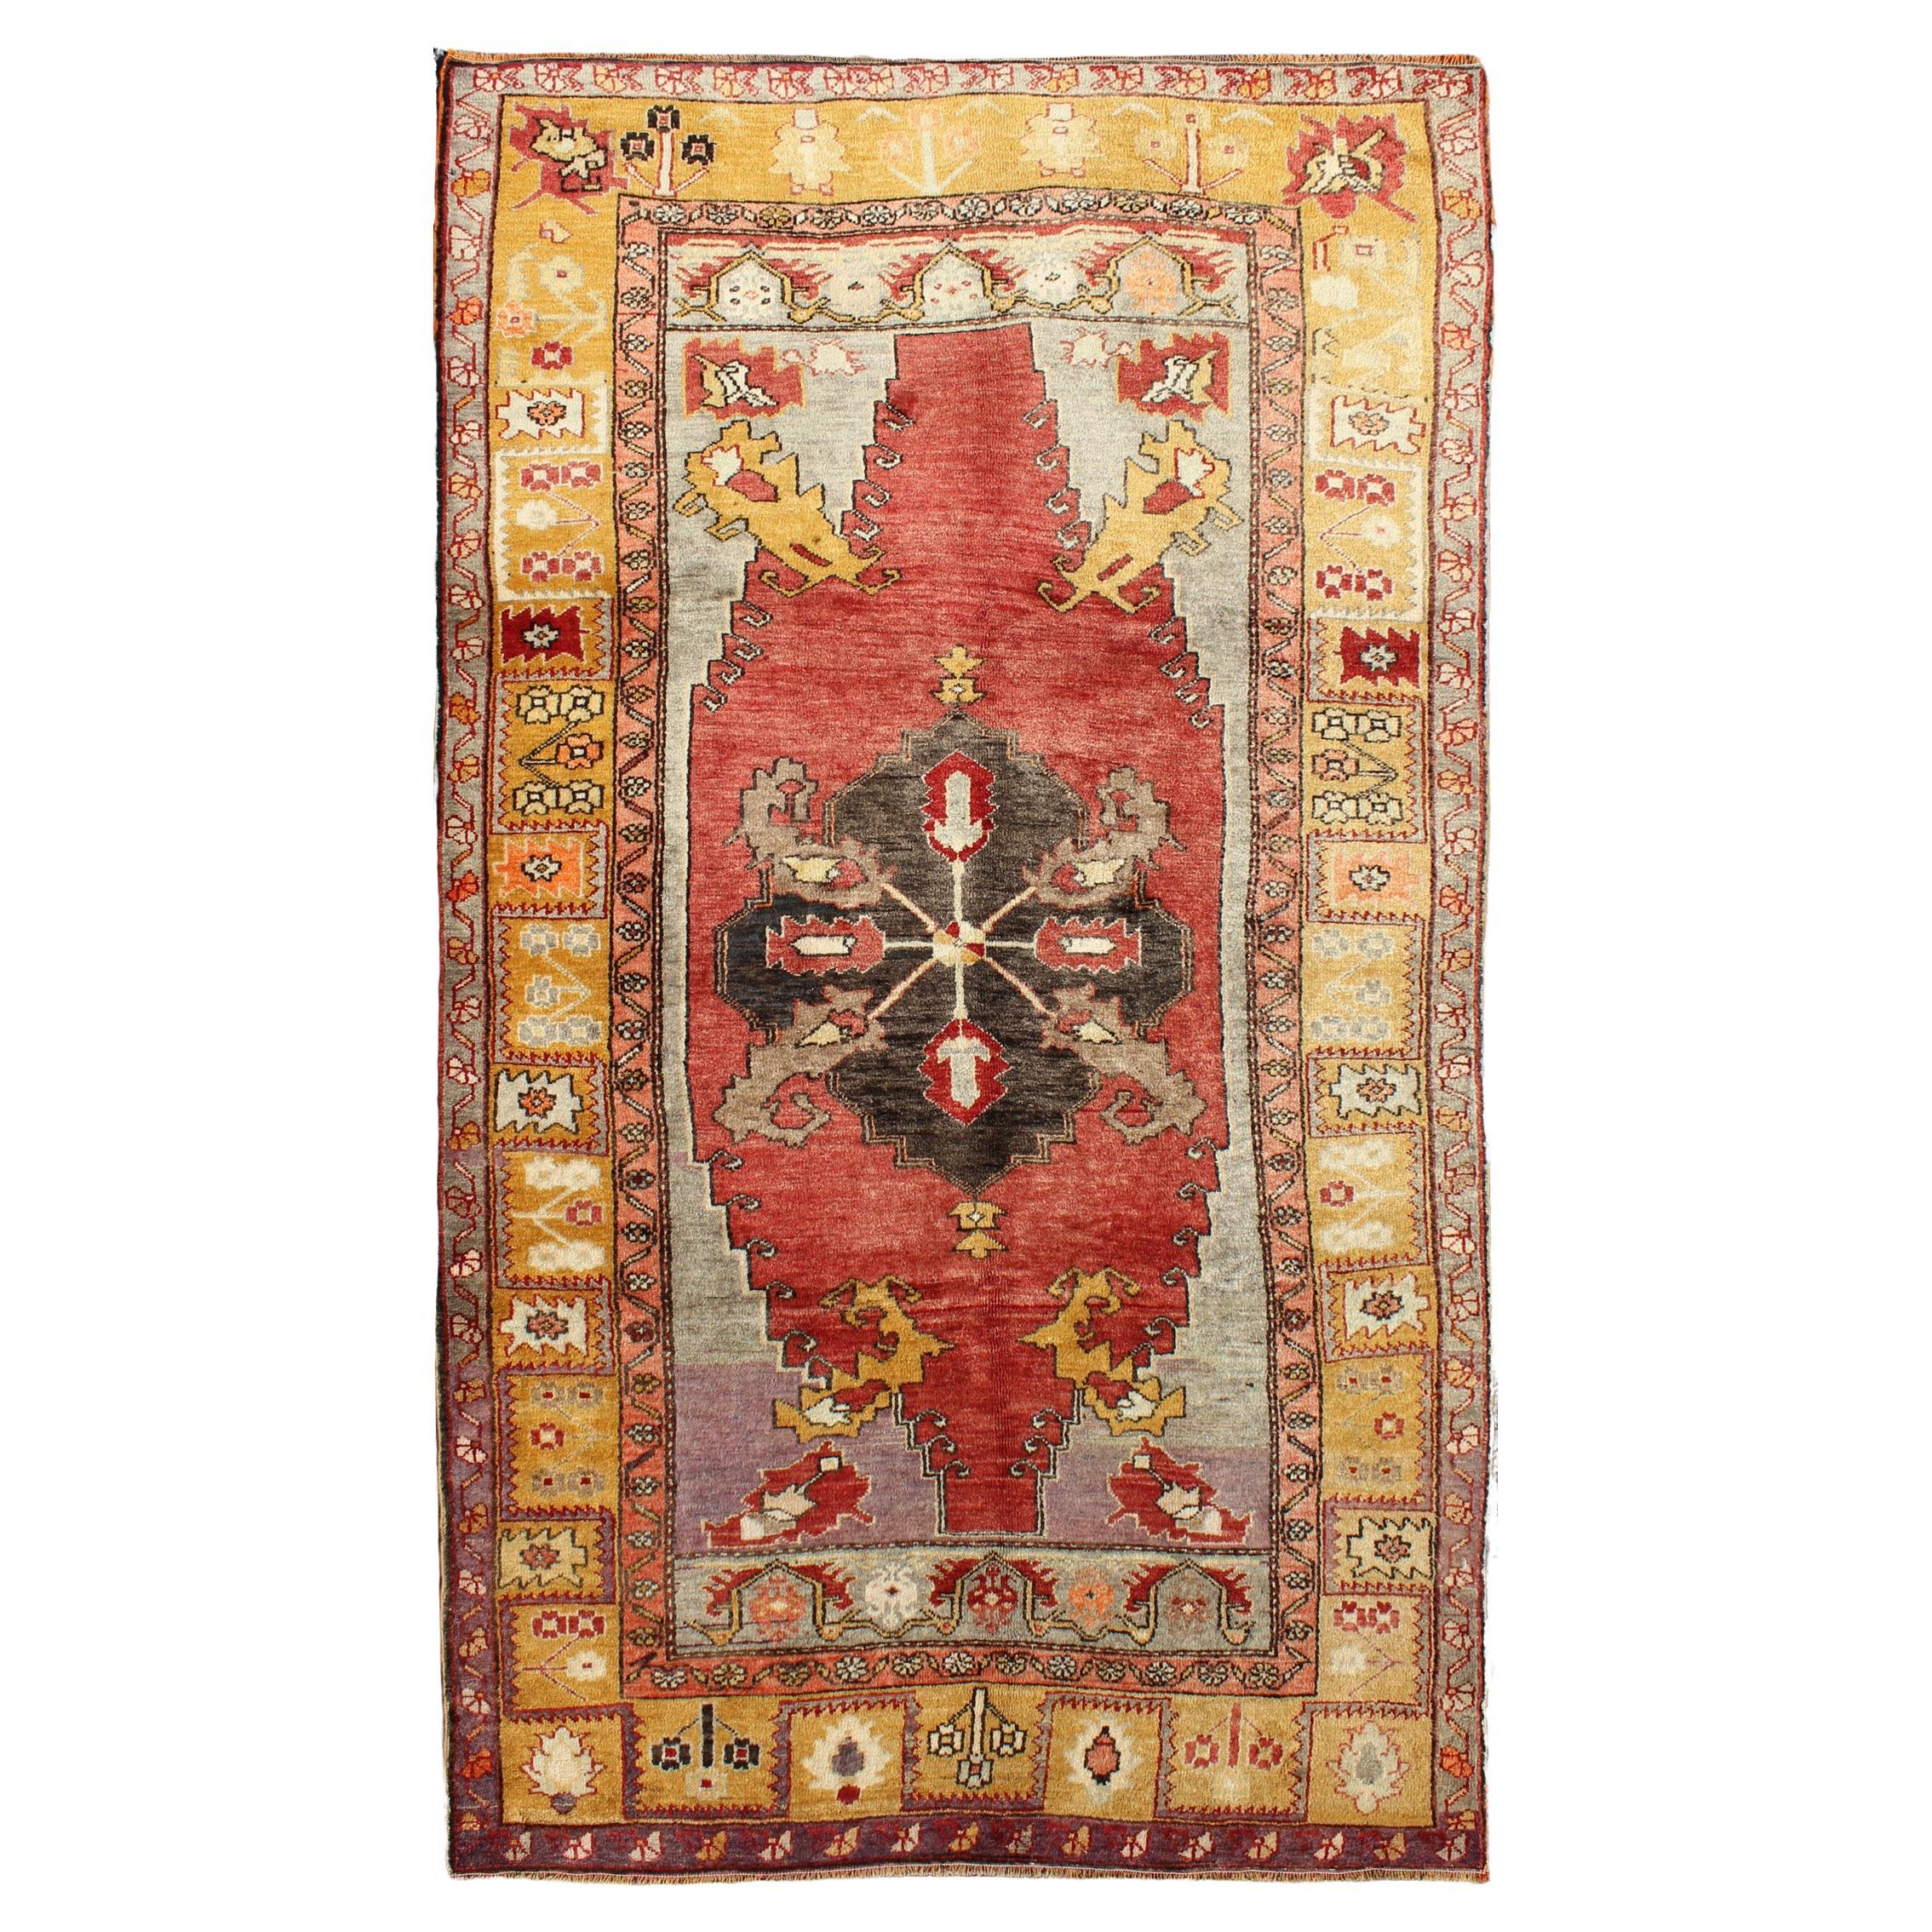 Türkischer antiker Oushak-Teppich in Rot und Gold mit Diamantmedaillon, Stammeskunst